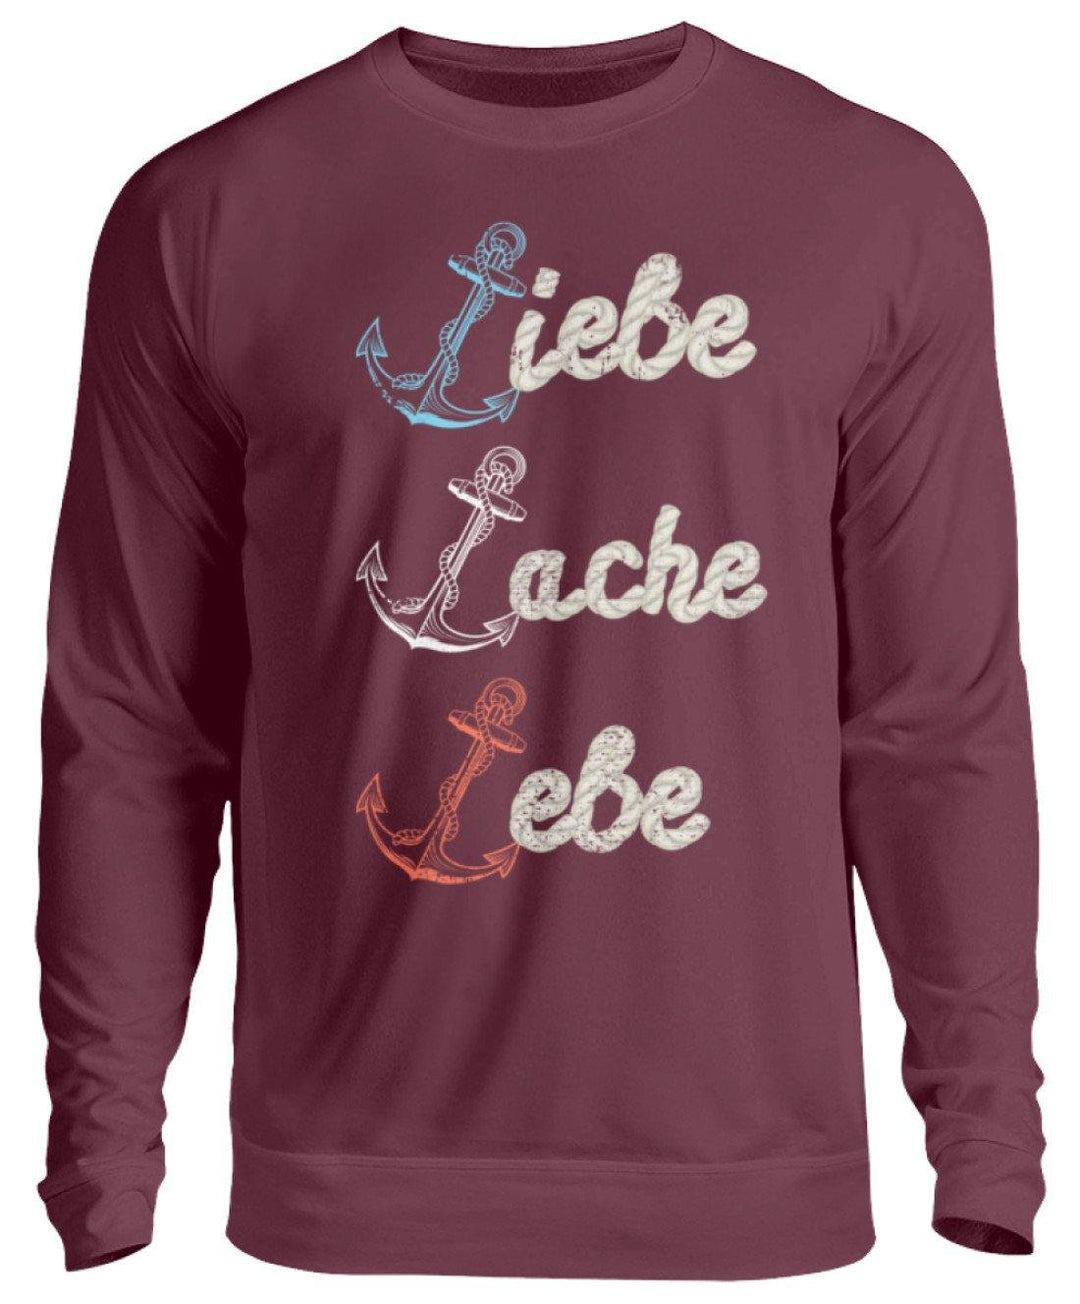 Liebe Lache Lebe - Norddeutsch   - Unisex Pullover - Words on Shirts Sag es mit dem Mittelfinger Shirts Hoodies Sweatshirt Taschen Gymsack Spruch Sprüche Statement